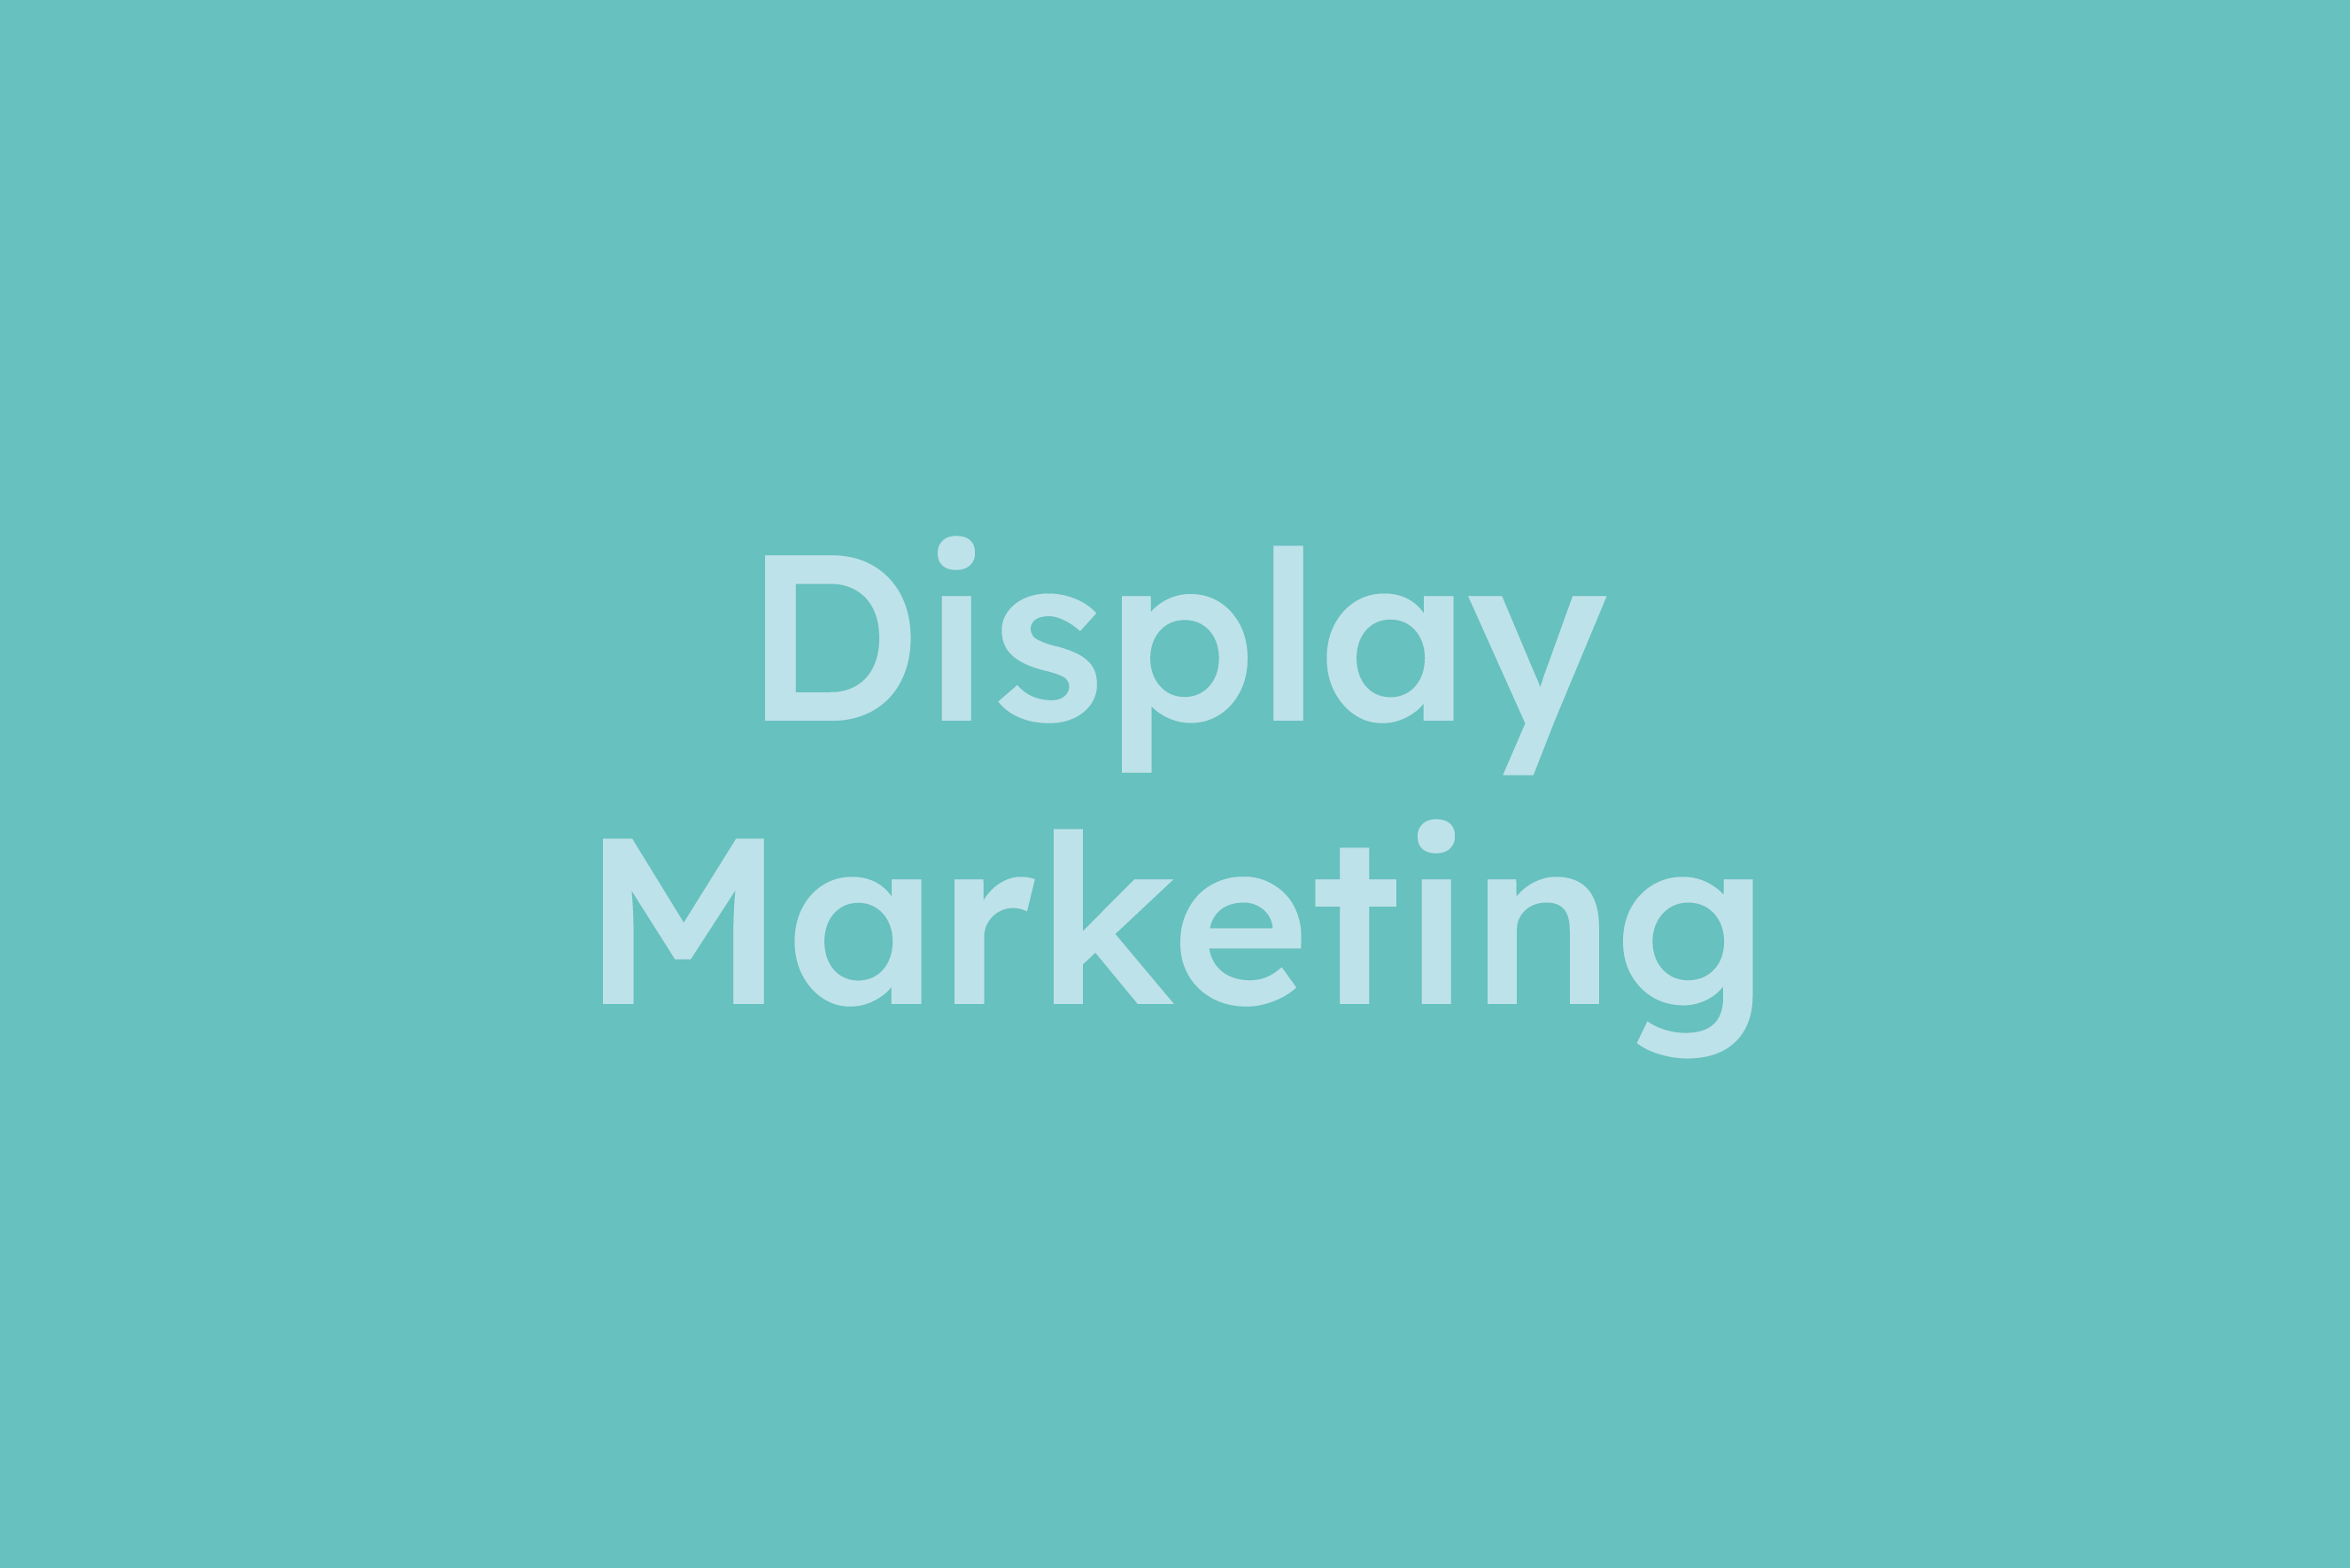 Display Marketing erklärt im Glossar von Campaign